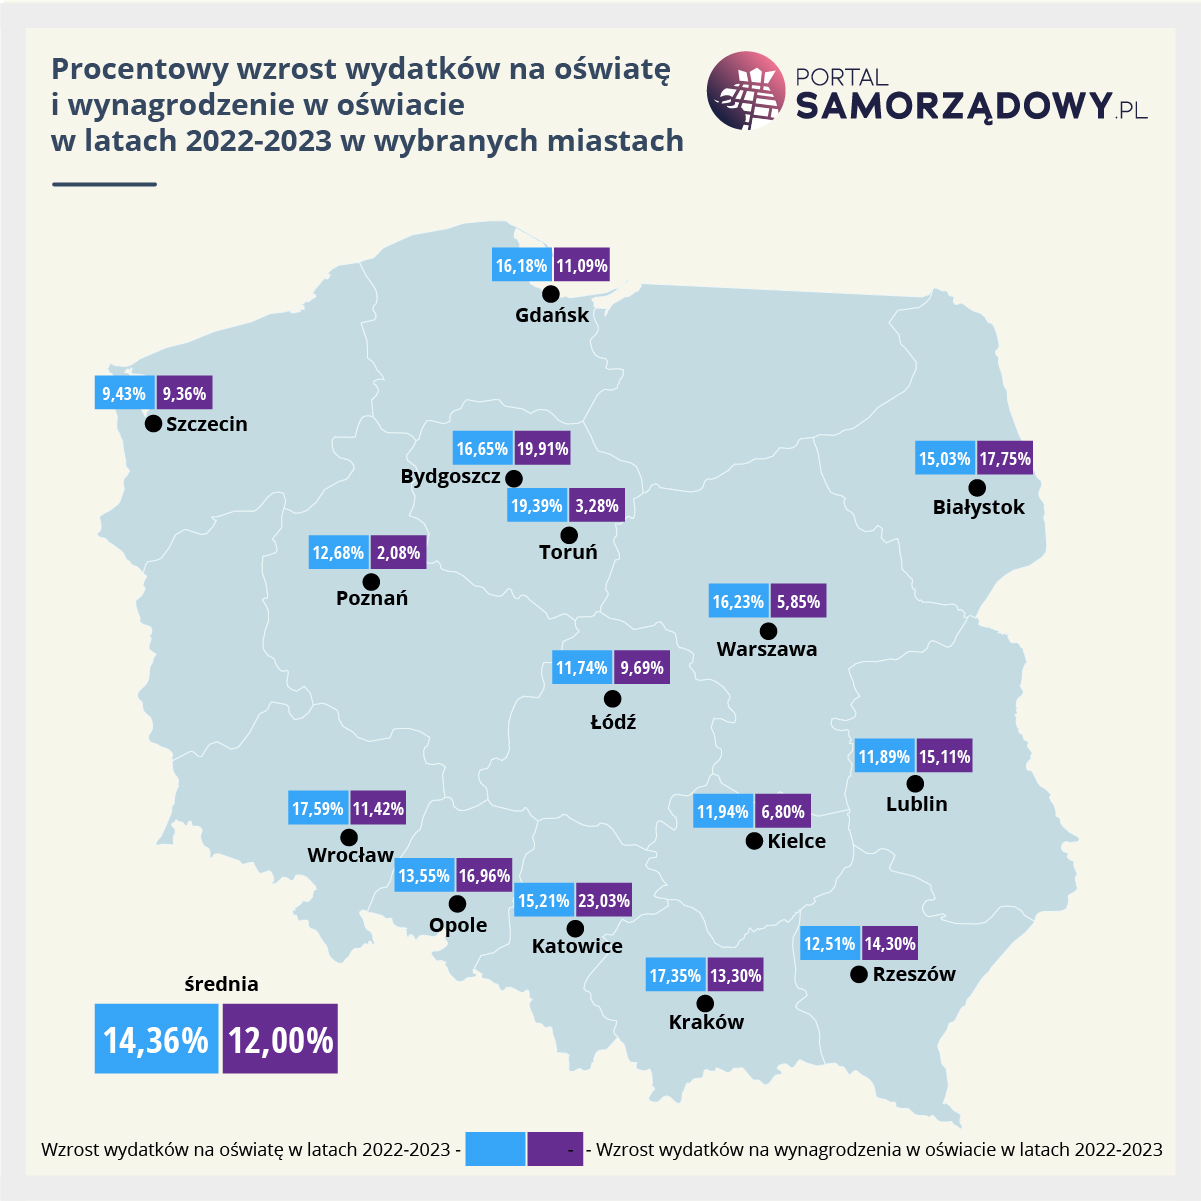 Procentowy wzrost wydatków na oświatę i wynagrodzenia w oświacie w wybranych miastach (oprac. PortalSamorzadowy.pl)